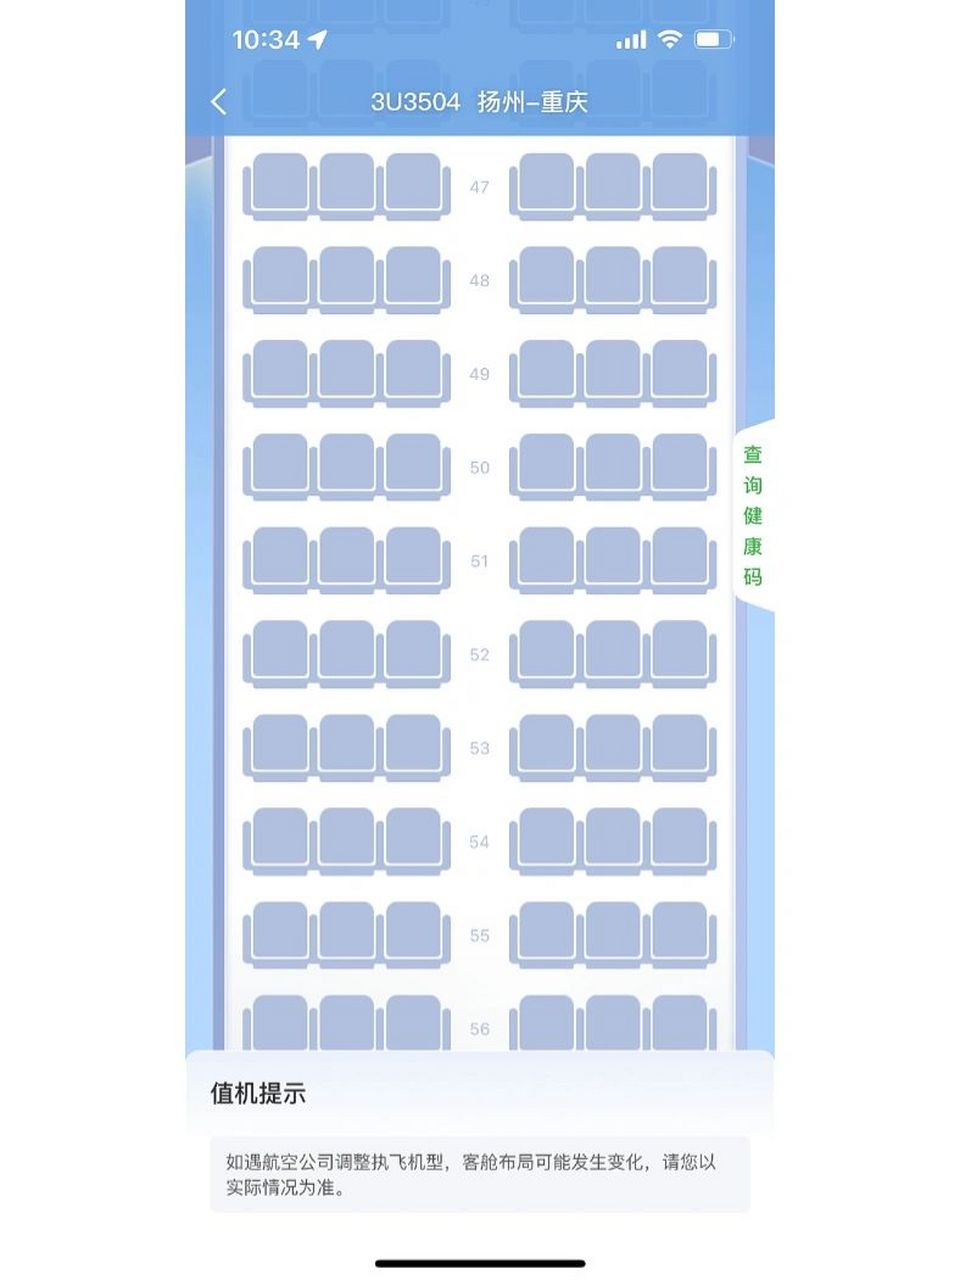 川航a330机型座位图图片